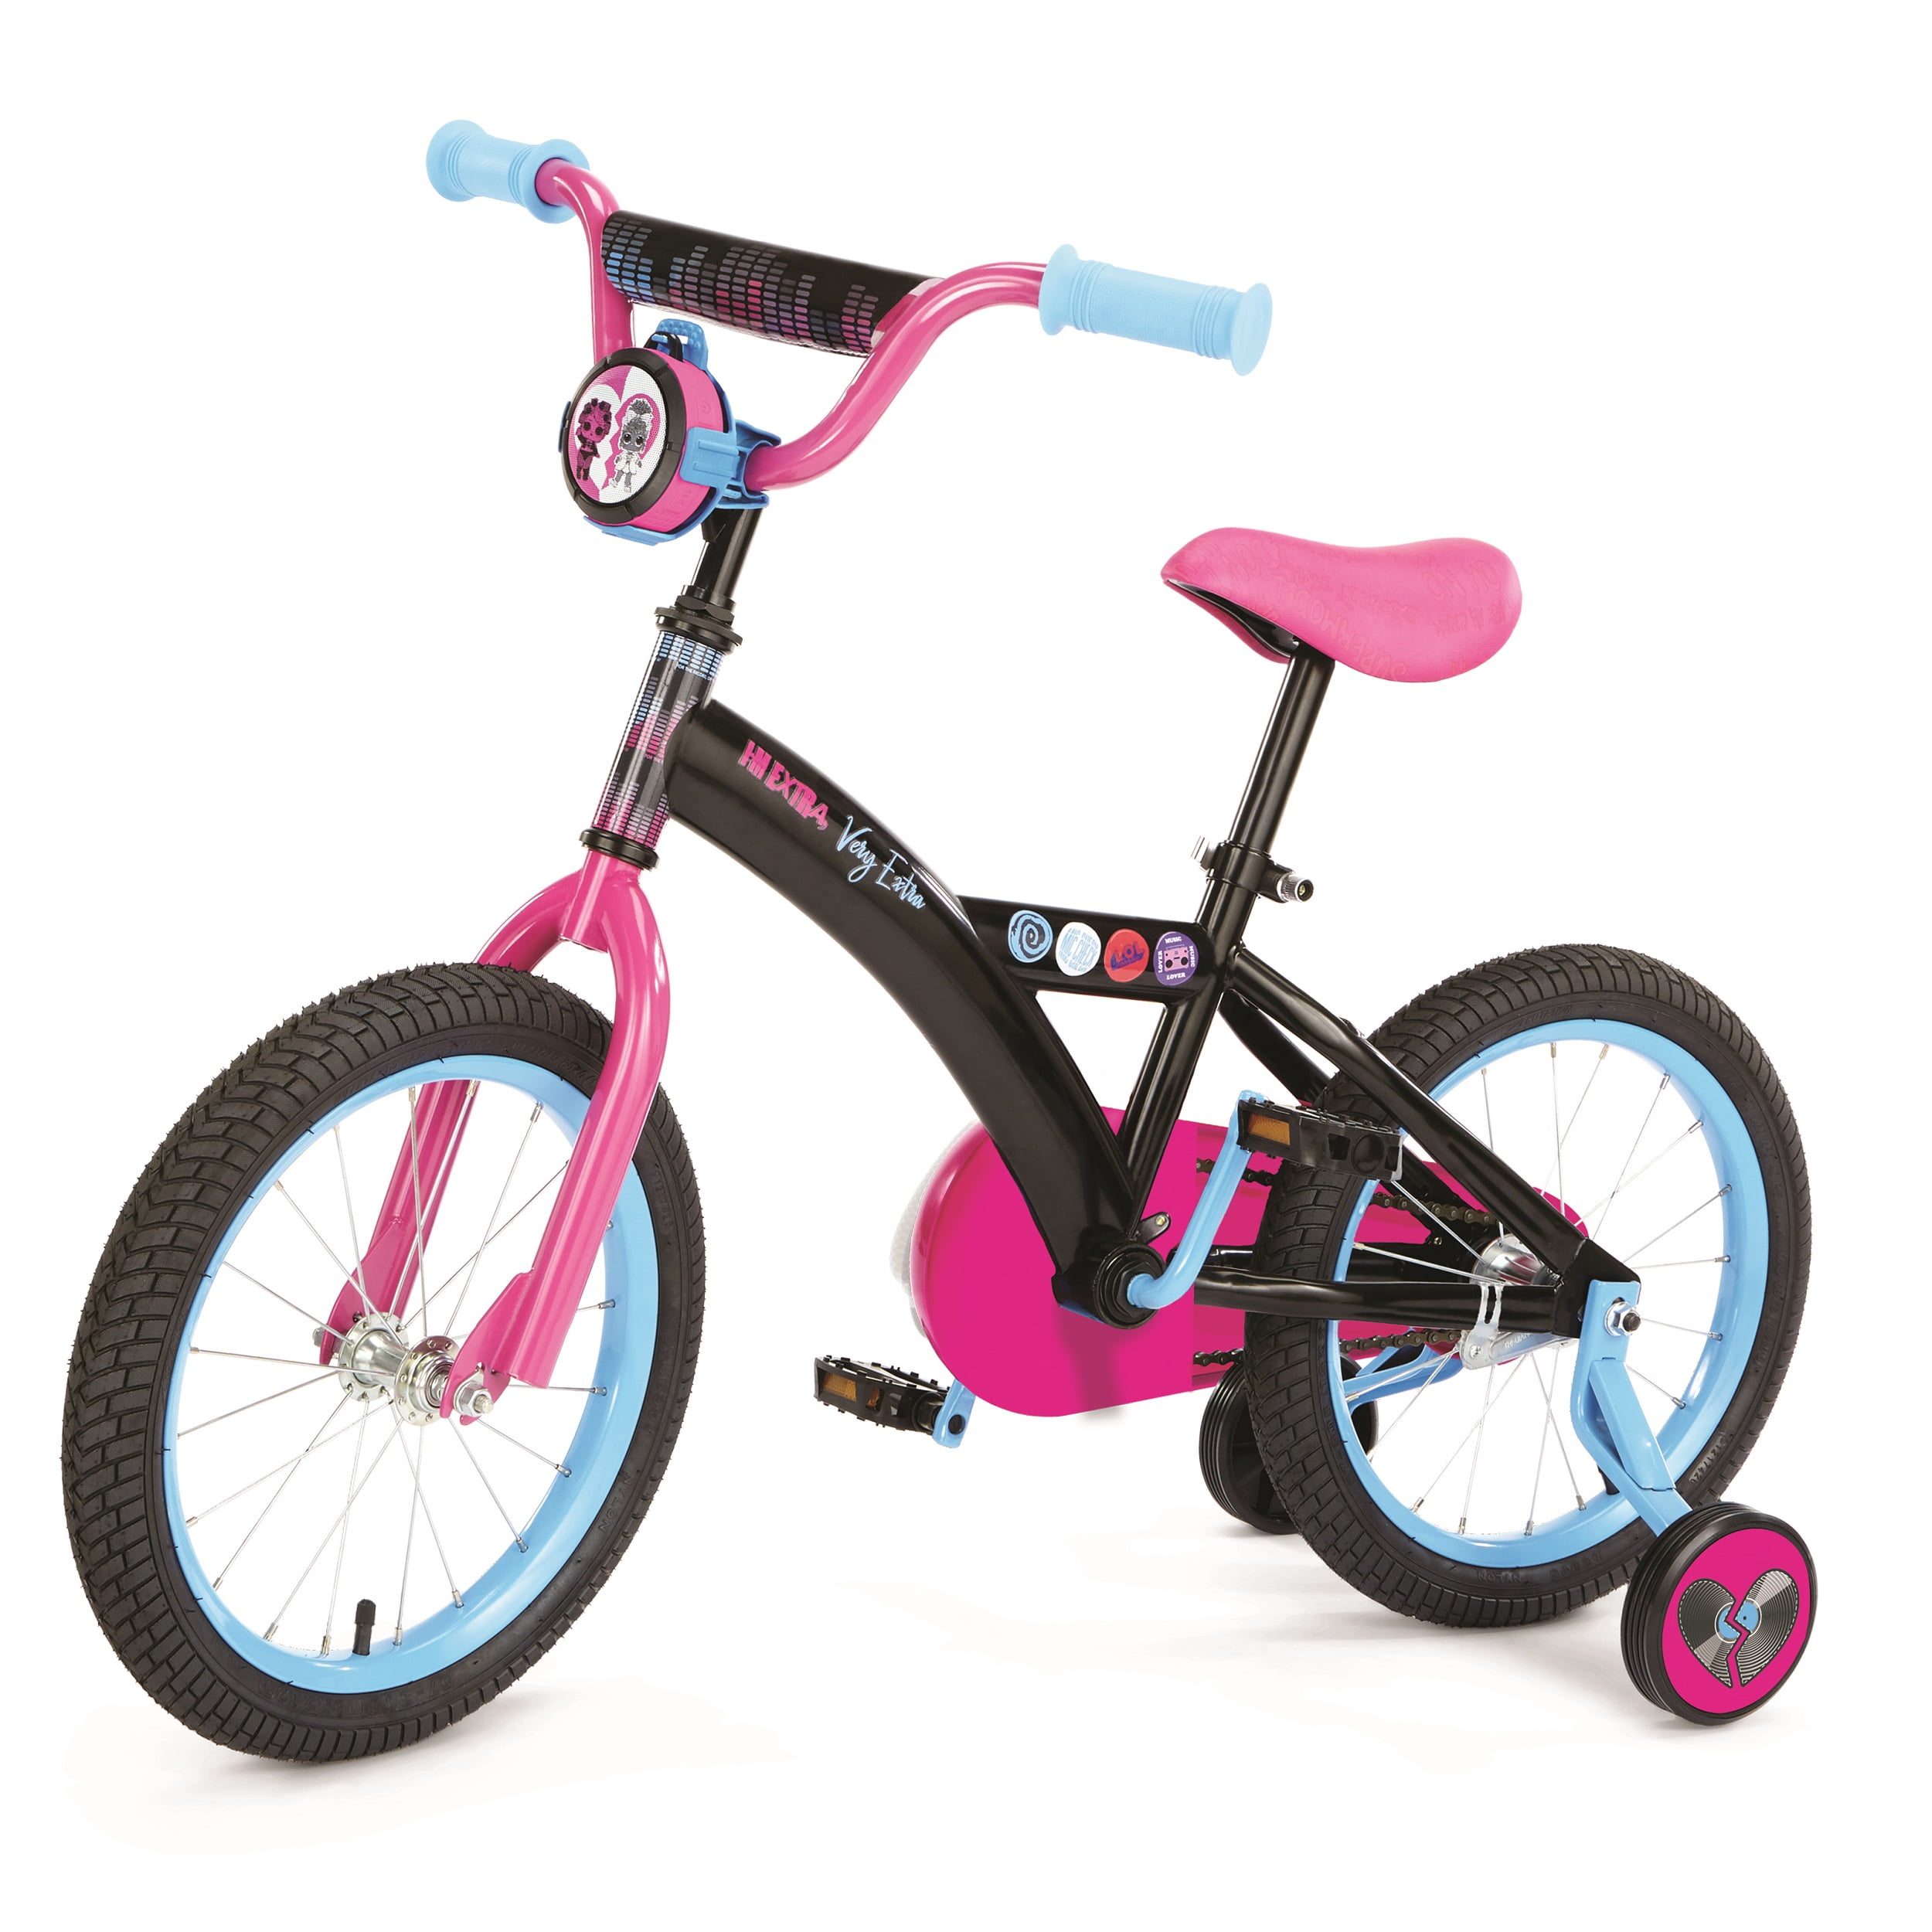 LOL Surprise kids bike pink single speed 16-inch wheel 